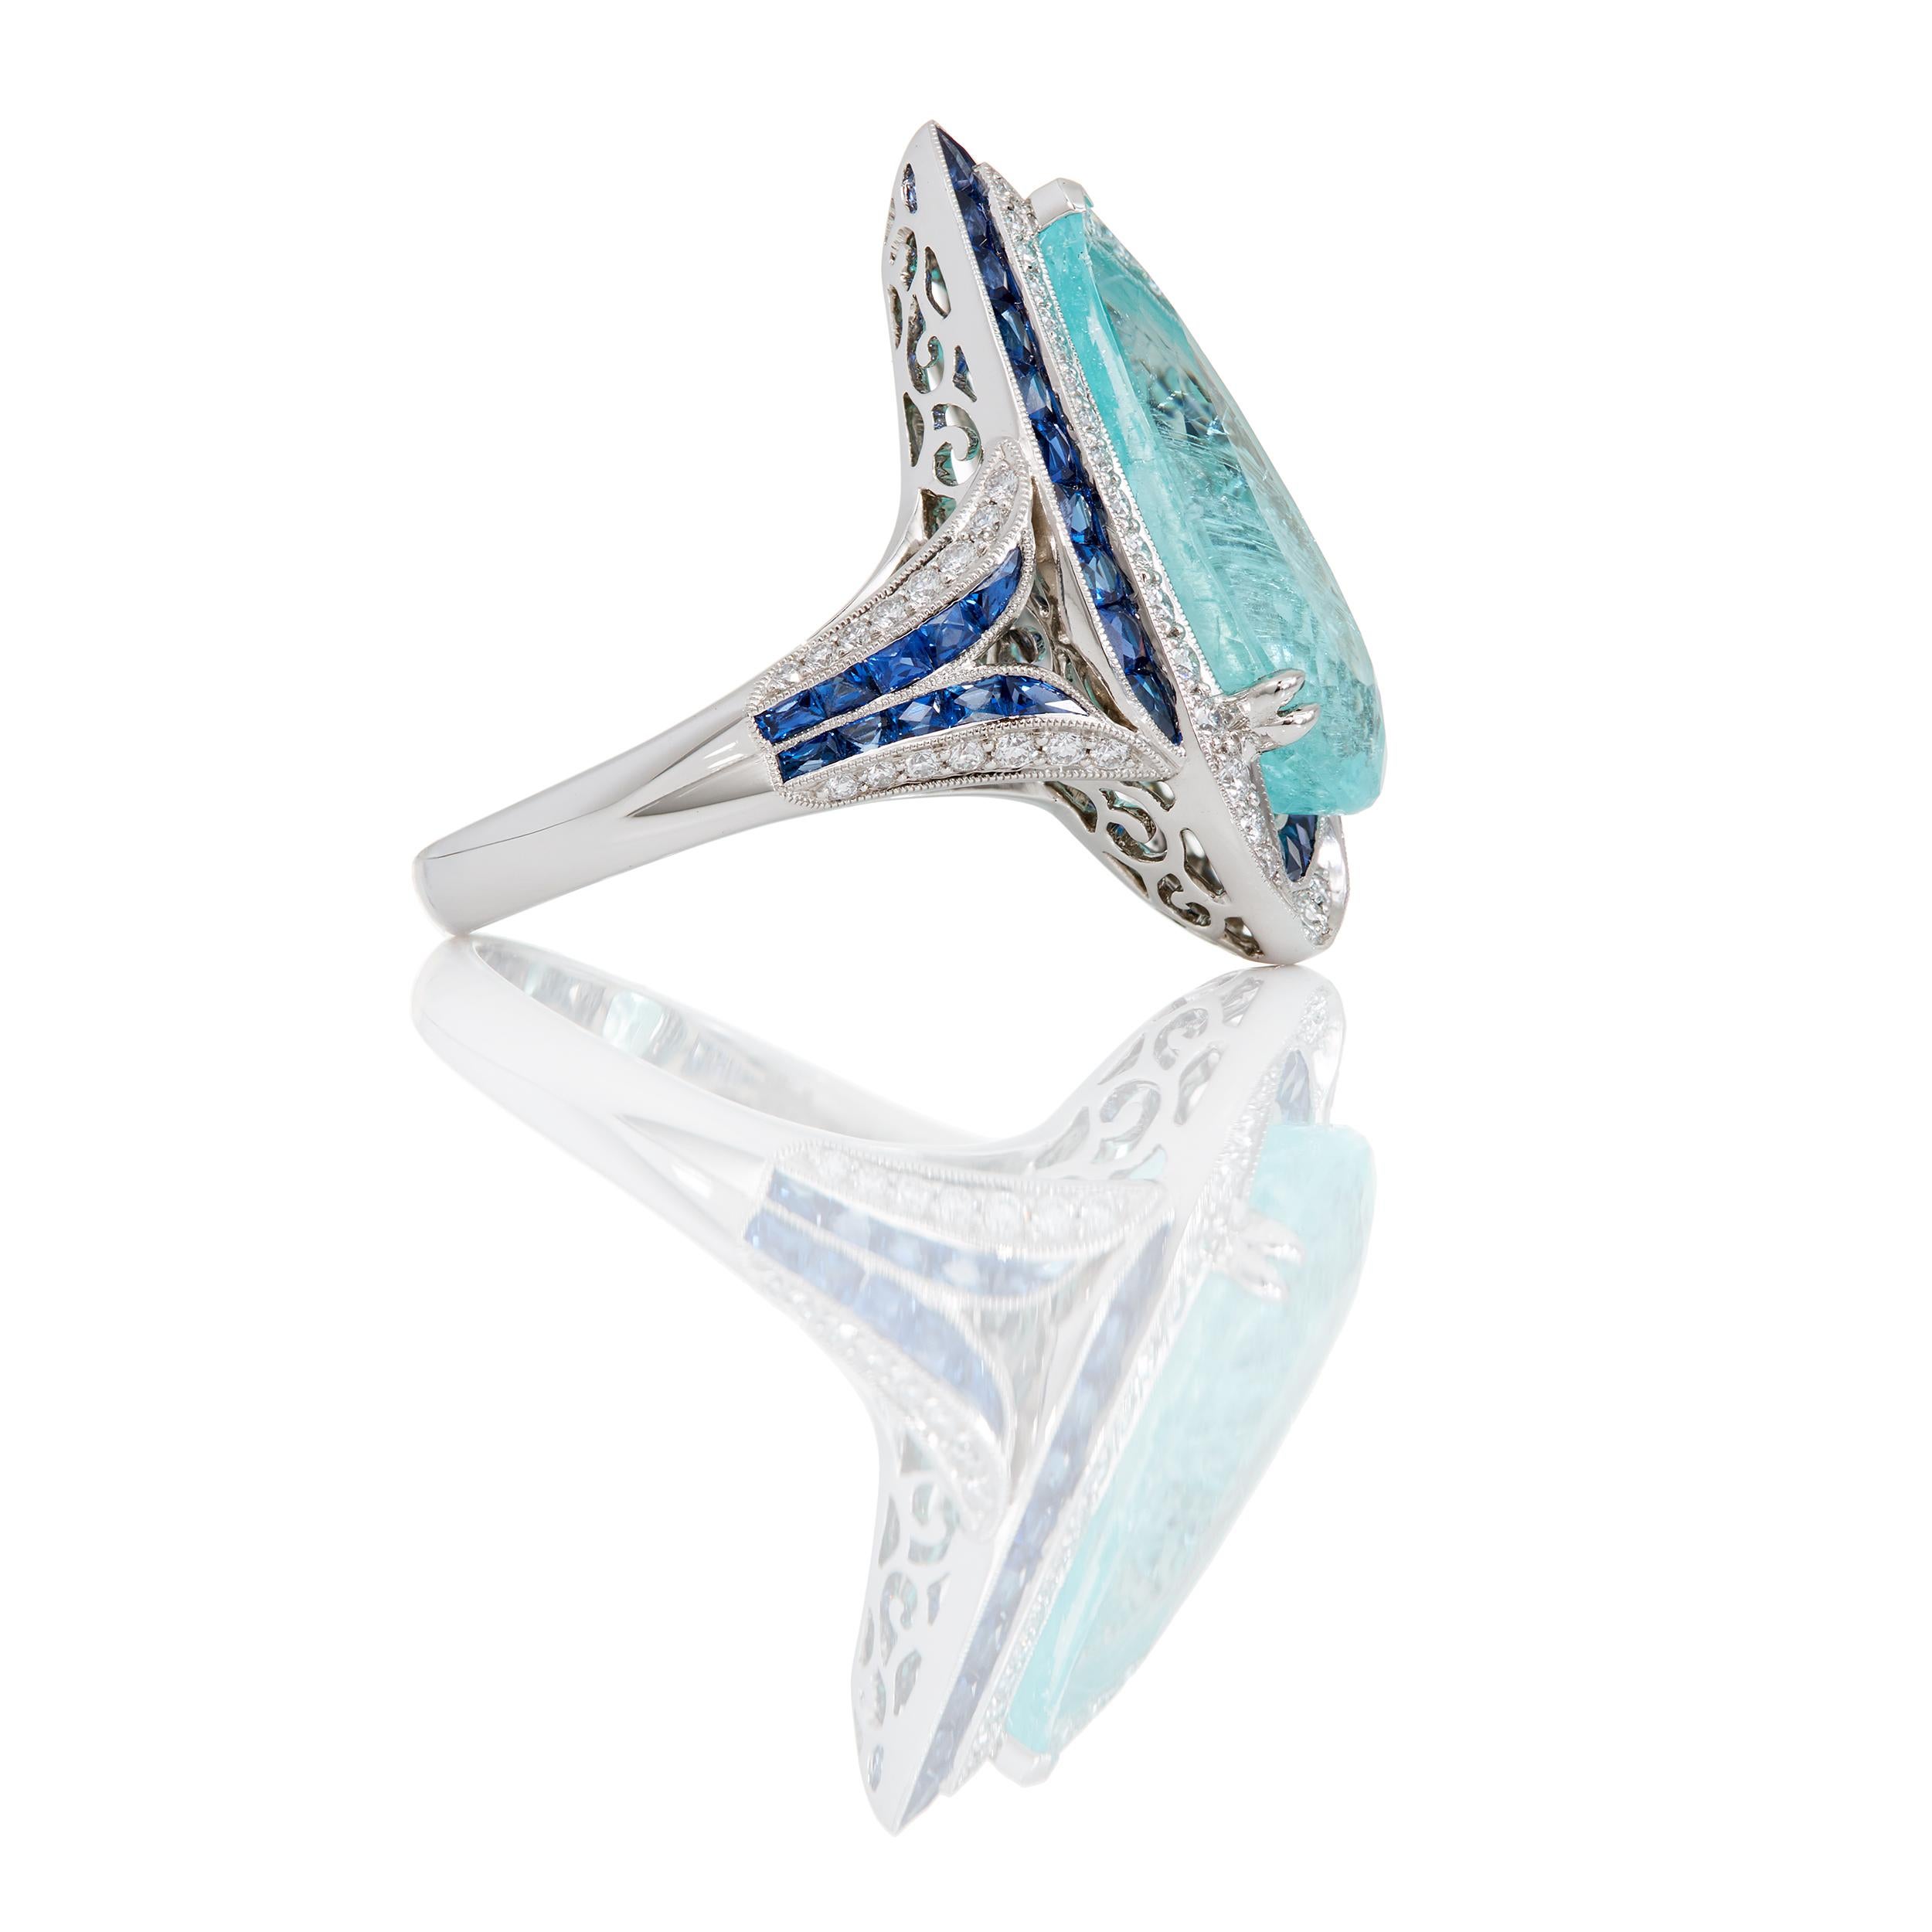 Blaue Ceylon-Saphire und Diamanten umgeben diesen spektakulären, 5,39 Karat schweren Paraiba-Turmalin in länglicher Birnenform auf anmutige Weise.  Dieser einzigartige Ring wurde zusammen mit einem passenden Ohrring-Set entworfen und handgefertigt,